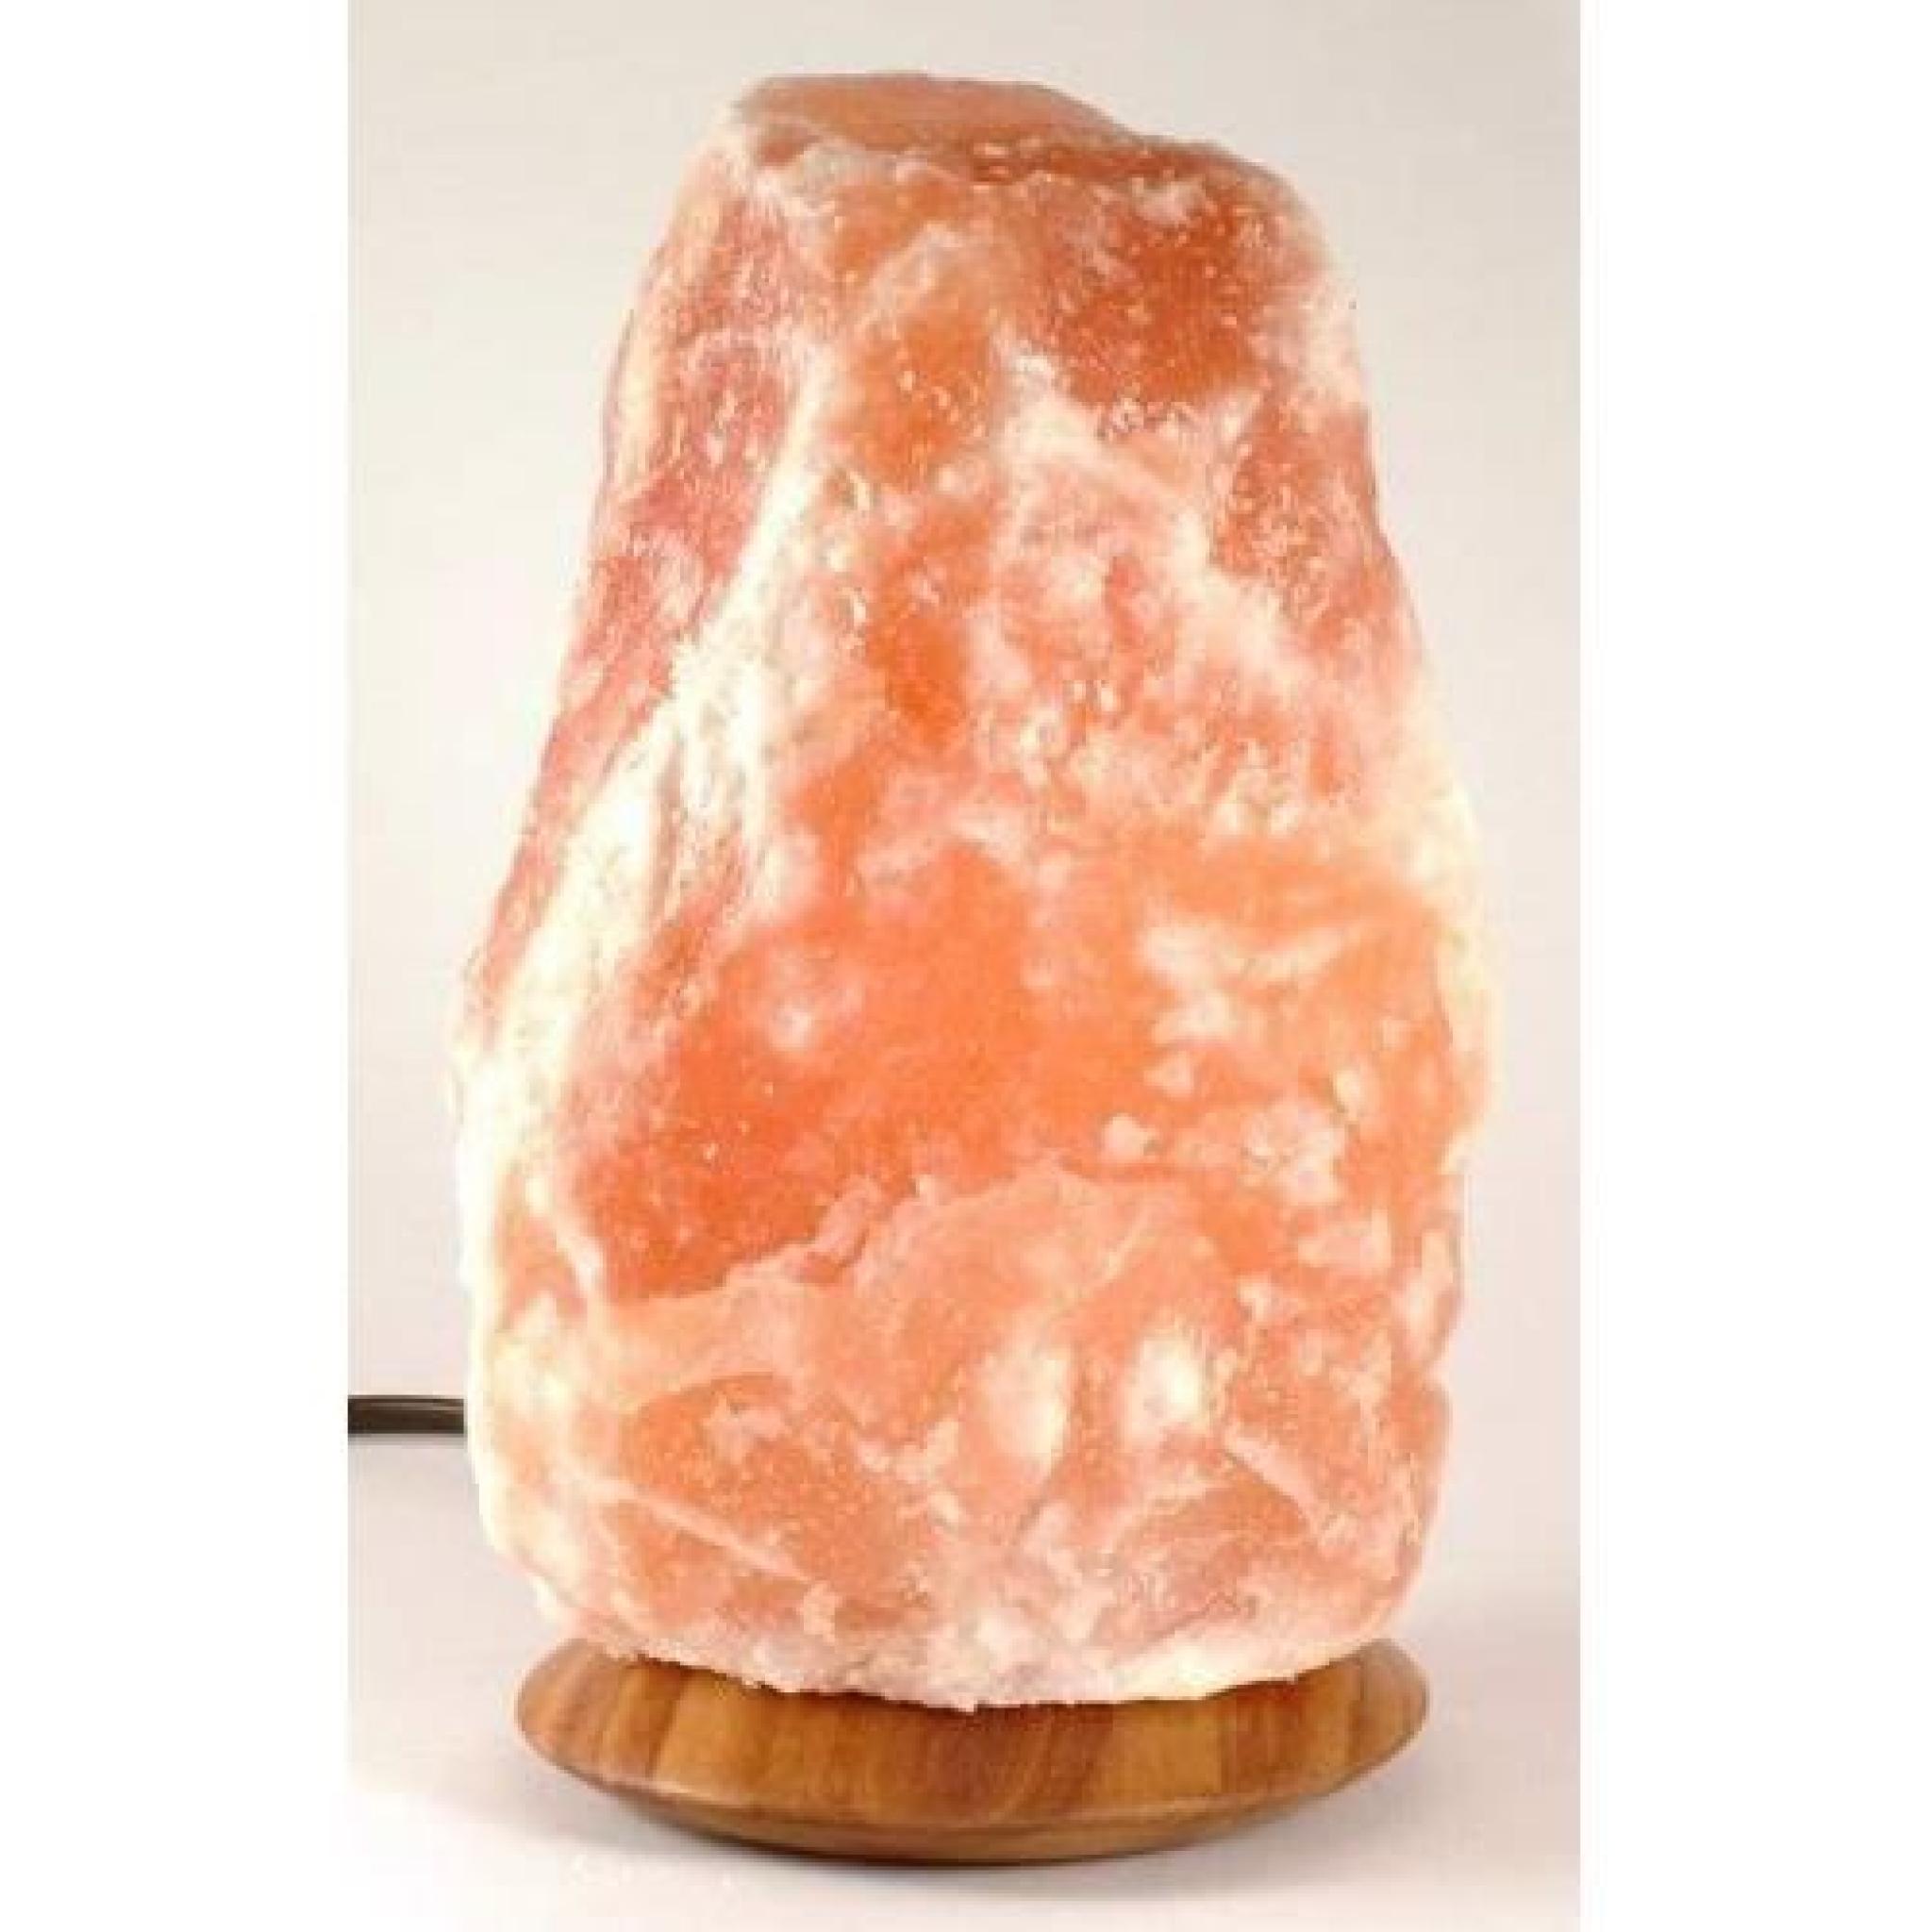 Lampe sel Himalaya véritable thérapeutique guérison santé entre 35 et 50 kilos